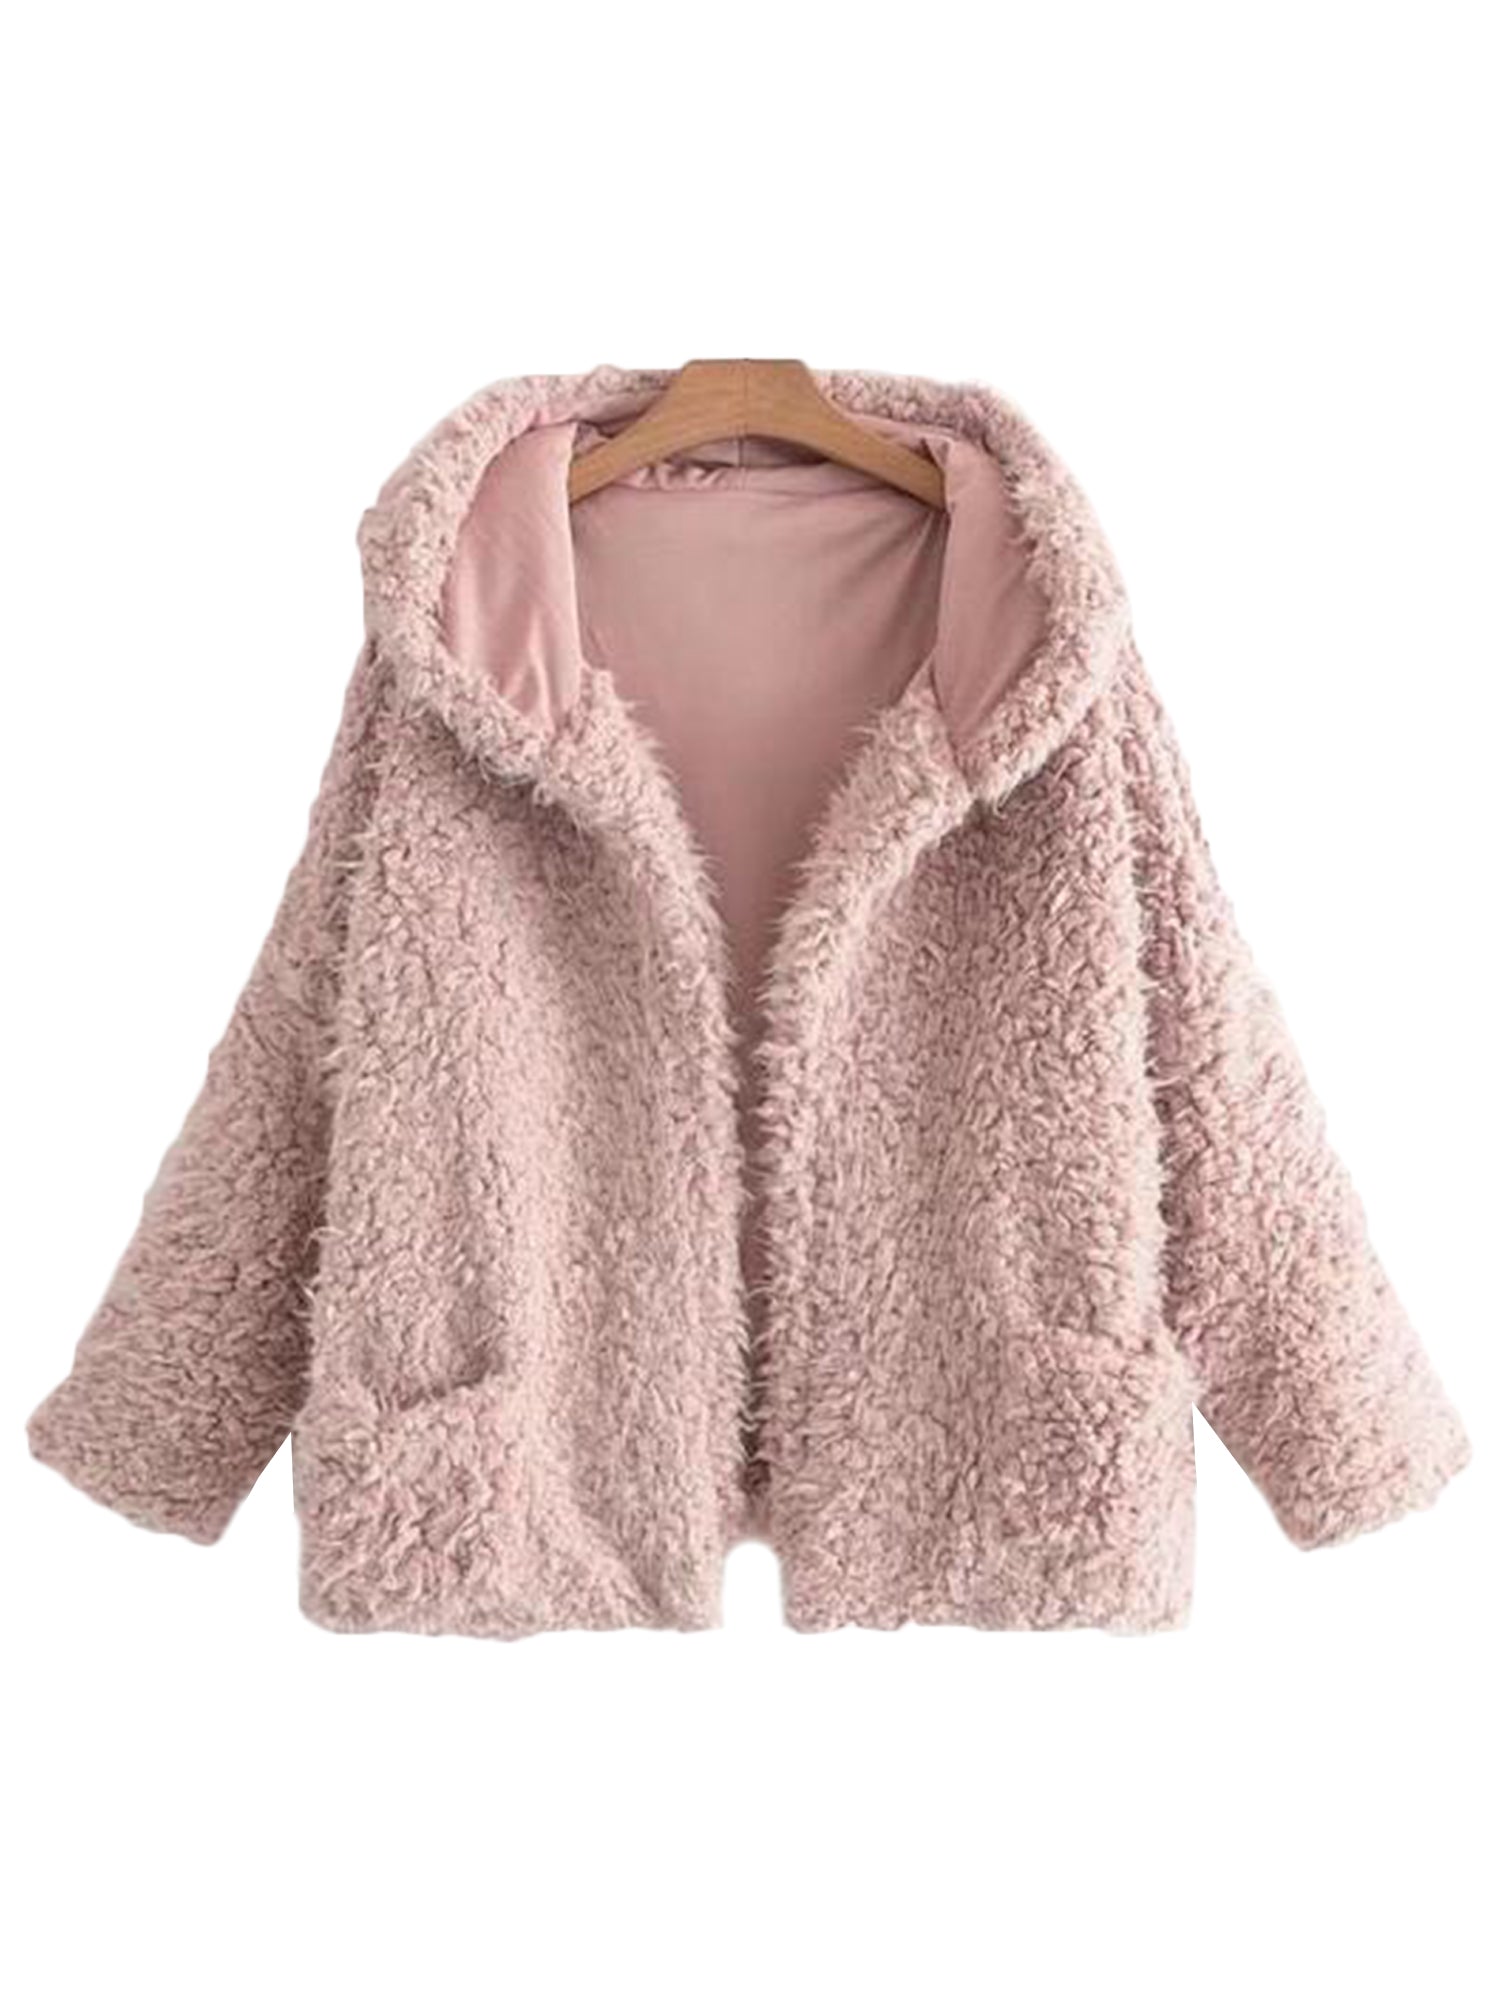 'Karena' Fluffy Fur Pink Jacket ( Uber Soft! )